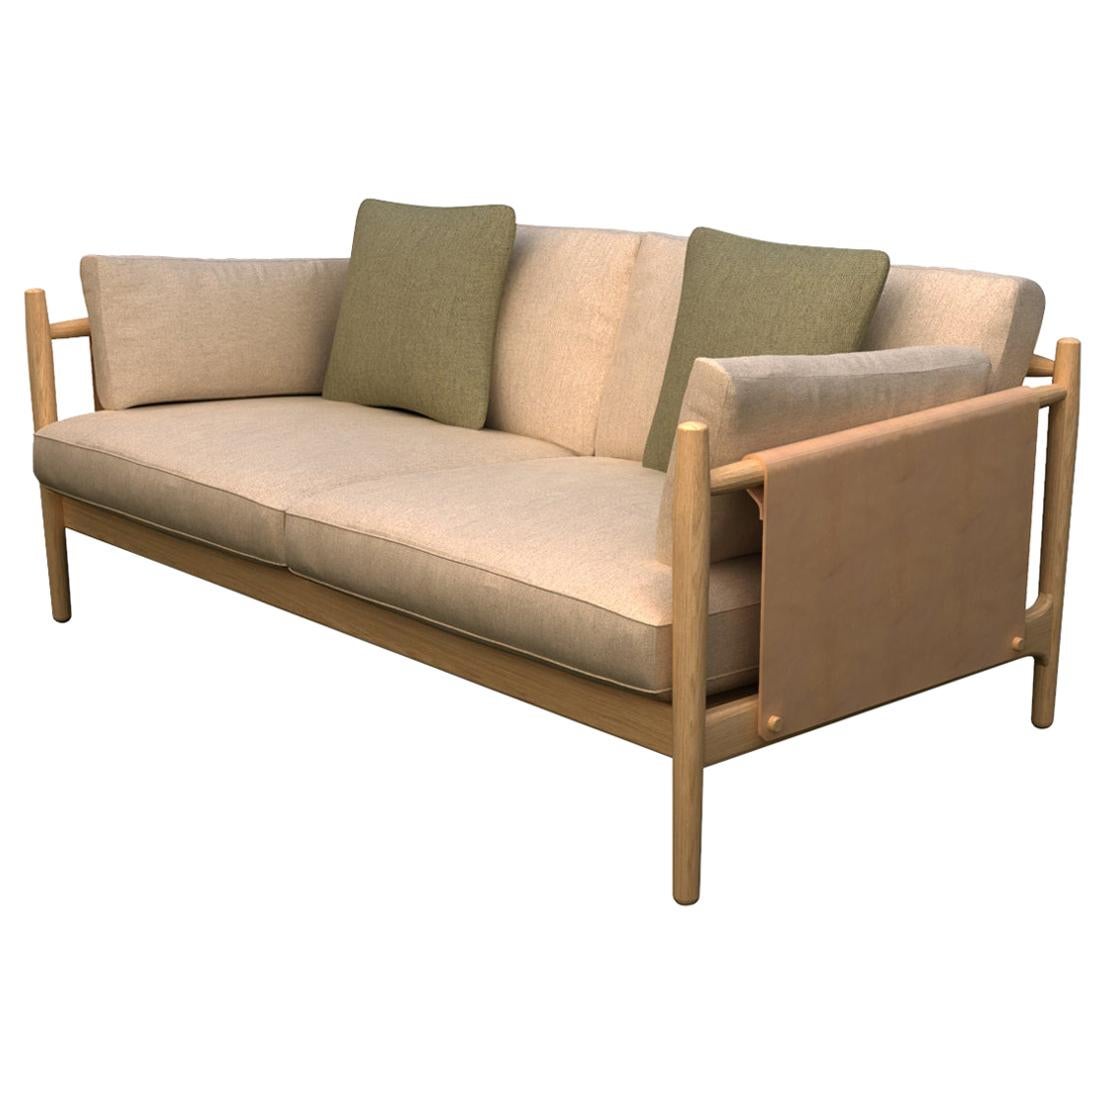 Citlal Zweisitzer-Sofa aus Massivholz, Stoff und Leder, zeitgenössisches Design